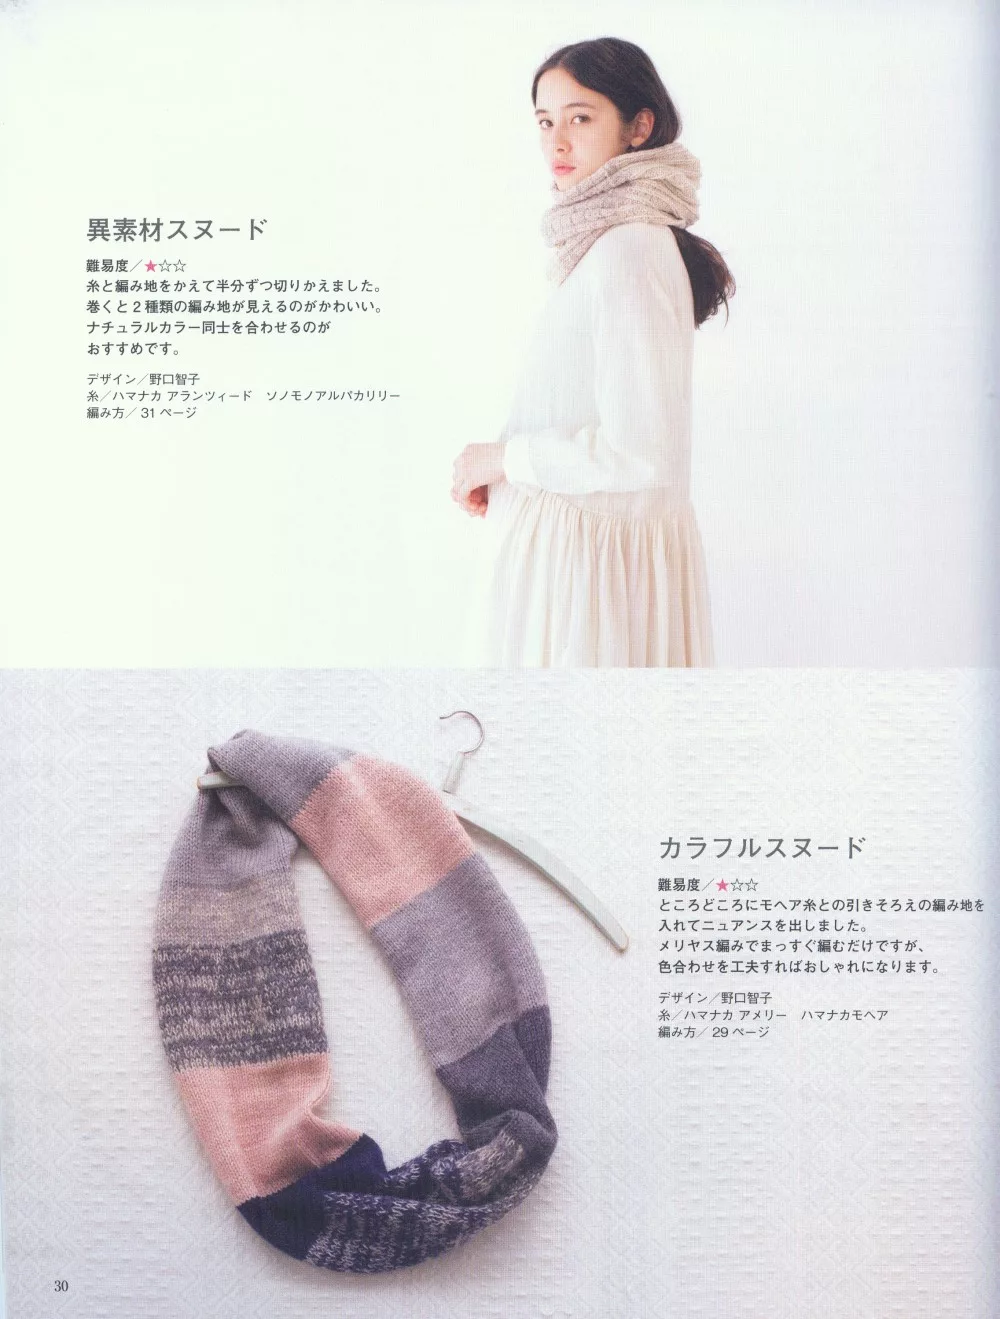 異素材、色彩繽紛的披巾設計